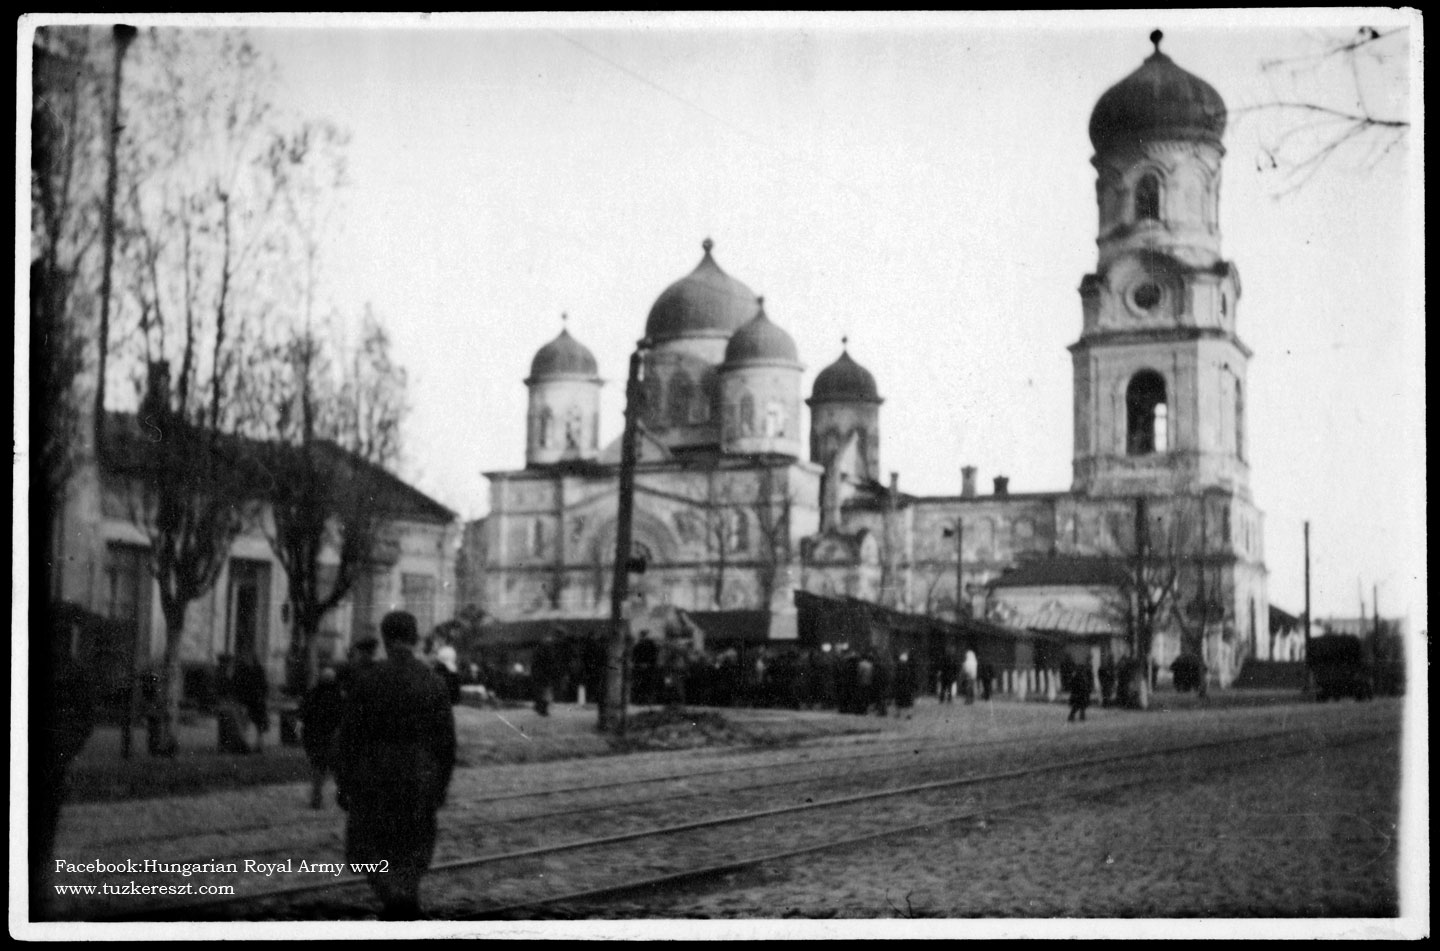 ЦУМ, Амурский мост и Яворницкого: Днепр в 1941-1942 годах (Фото). Новости Днепра